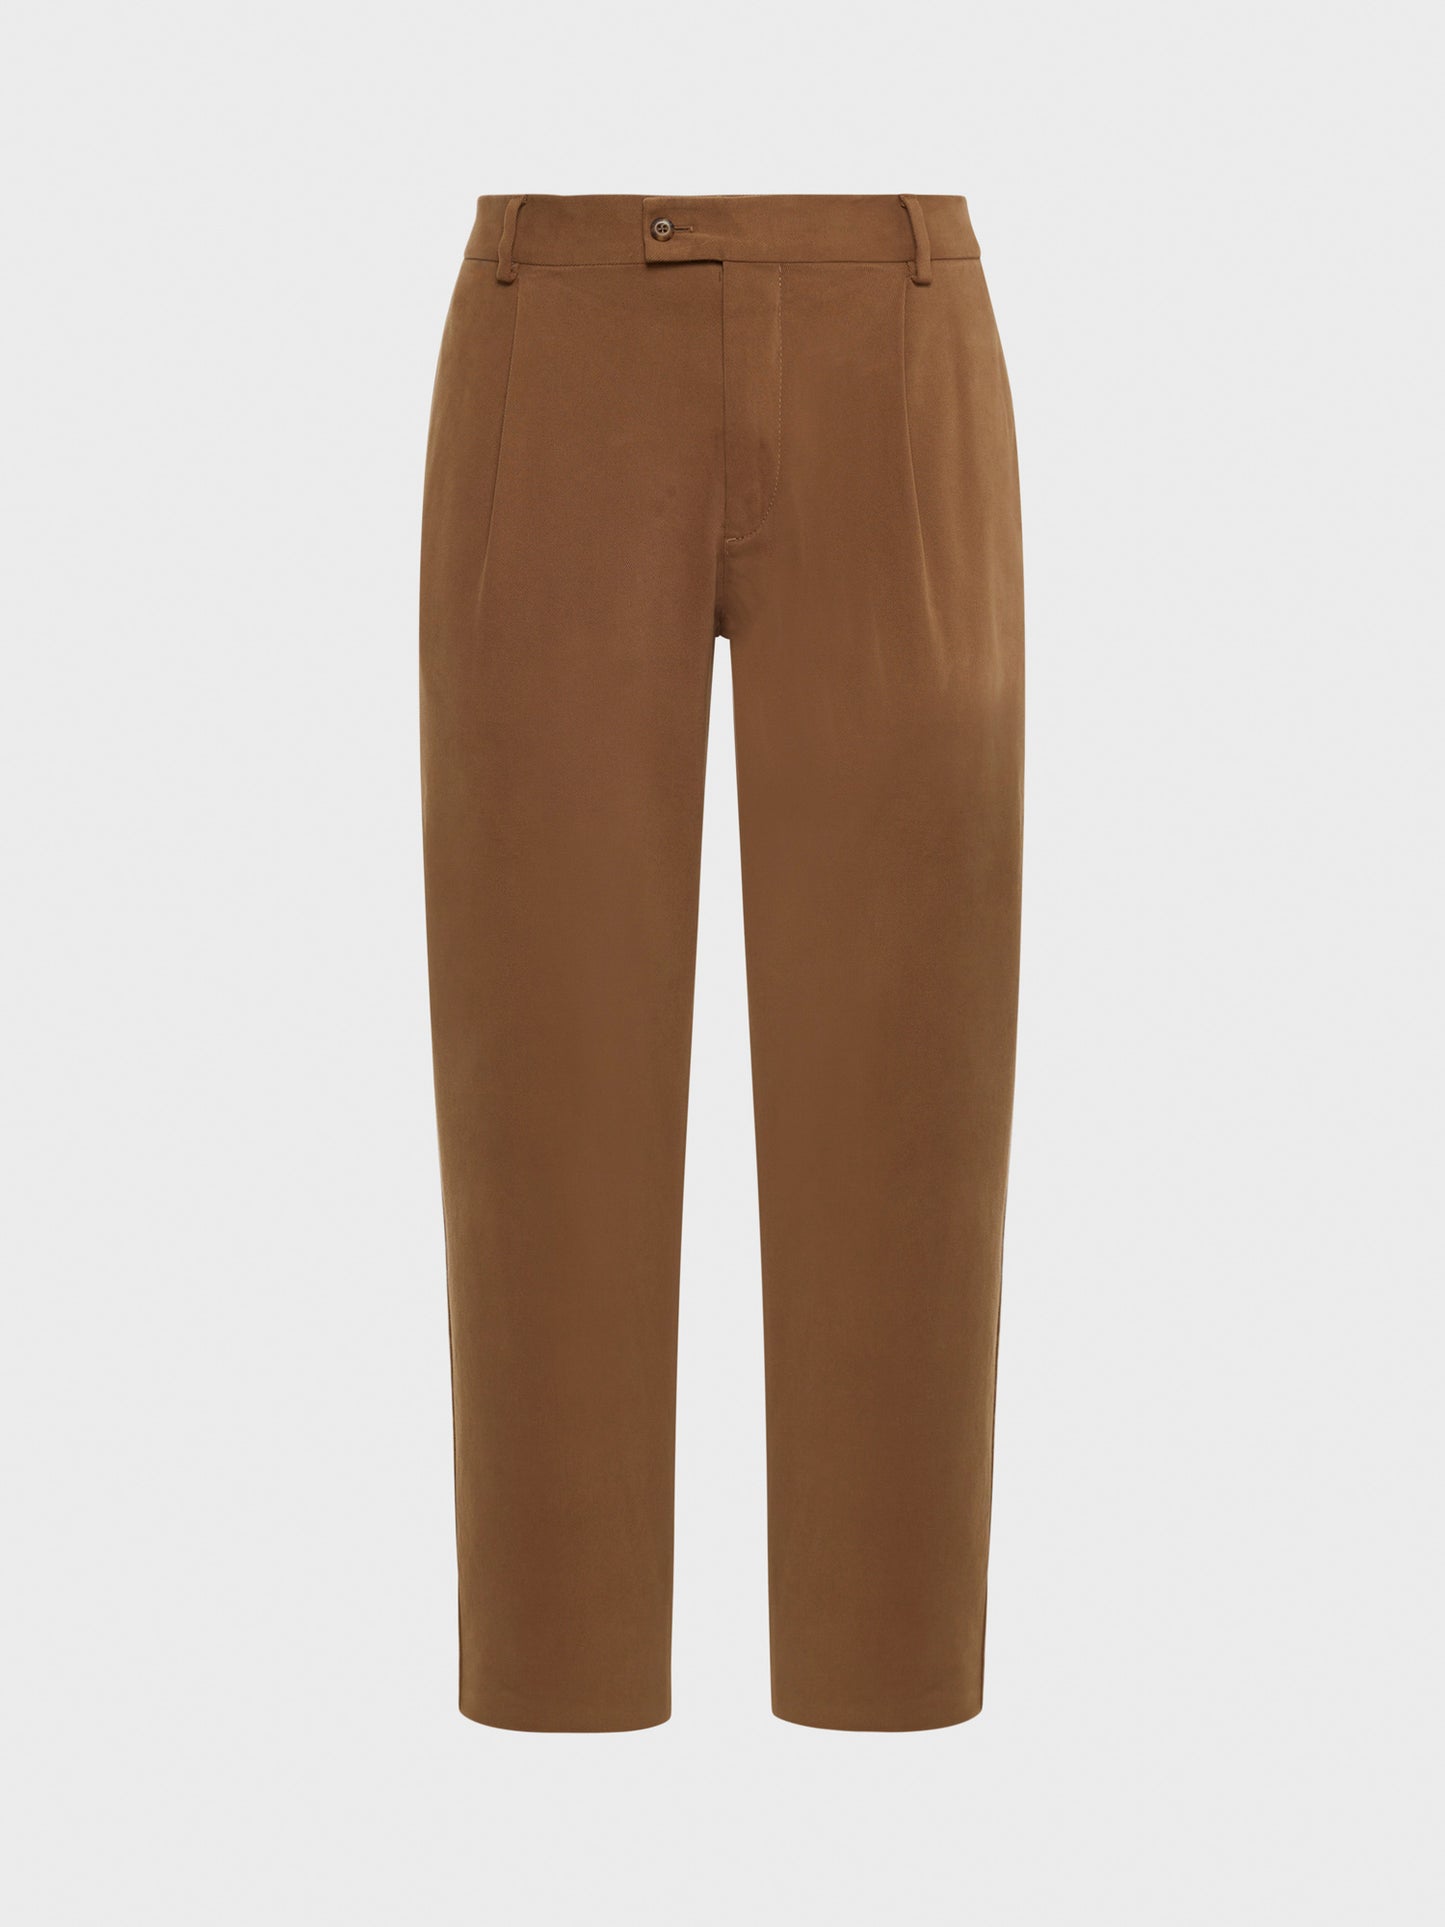 Caruso Menswear Abbigliamento Uomo Pantalone in cotone stretch color cammello still